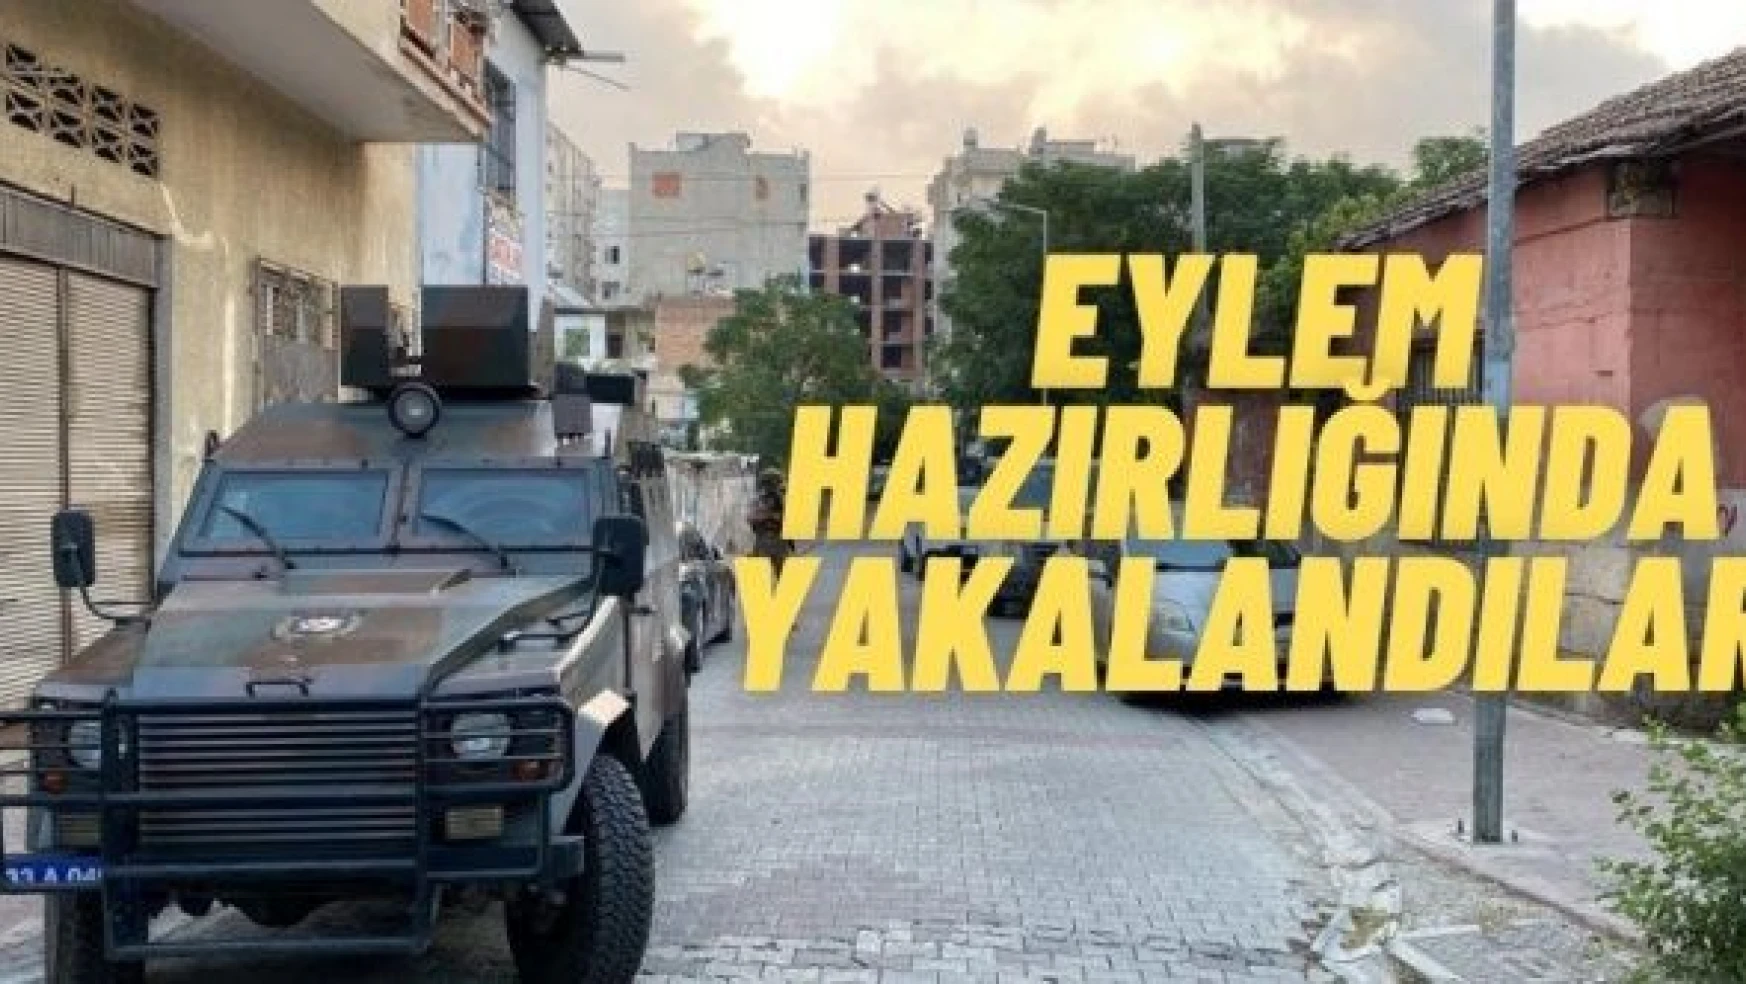 Eylem hazırlığındaki 8 PKK şüphelisi yakalandı!